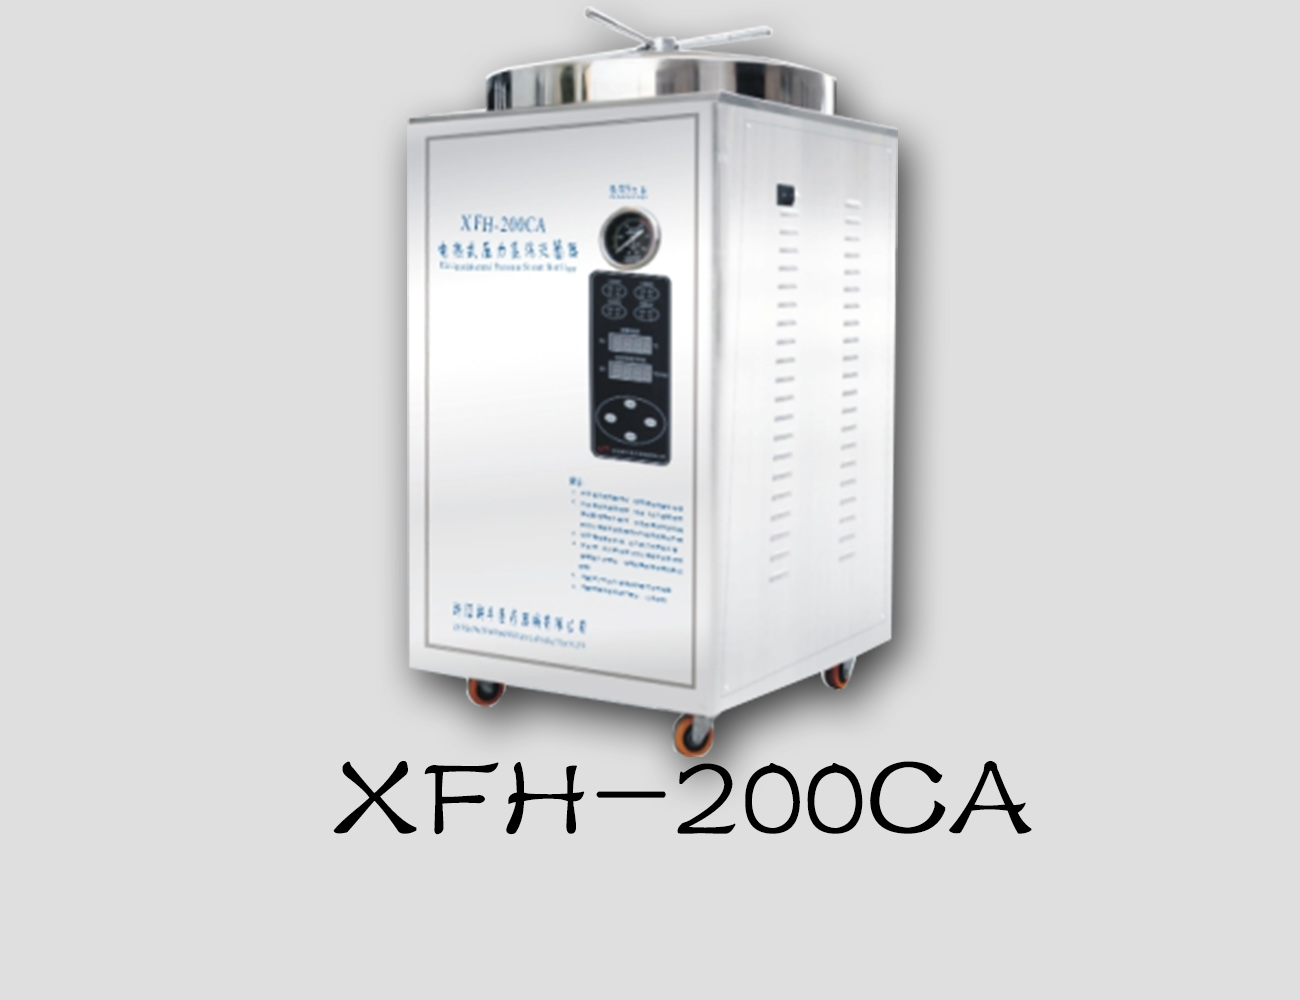 浙江新丰立式灭菌器XFH-200CA